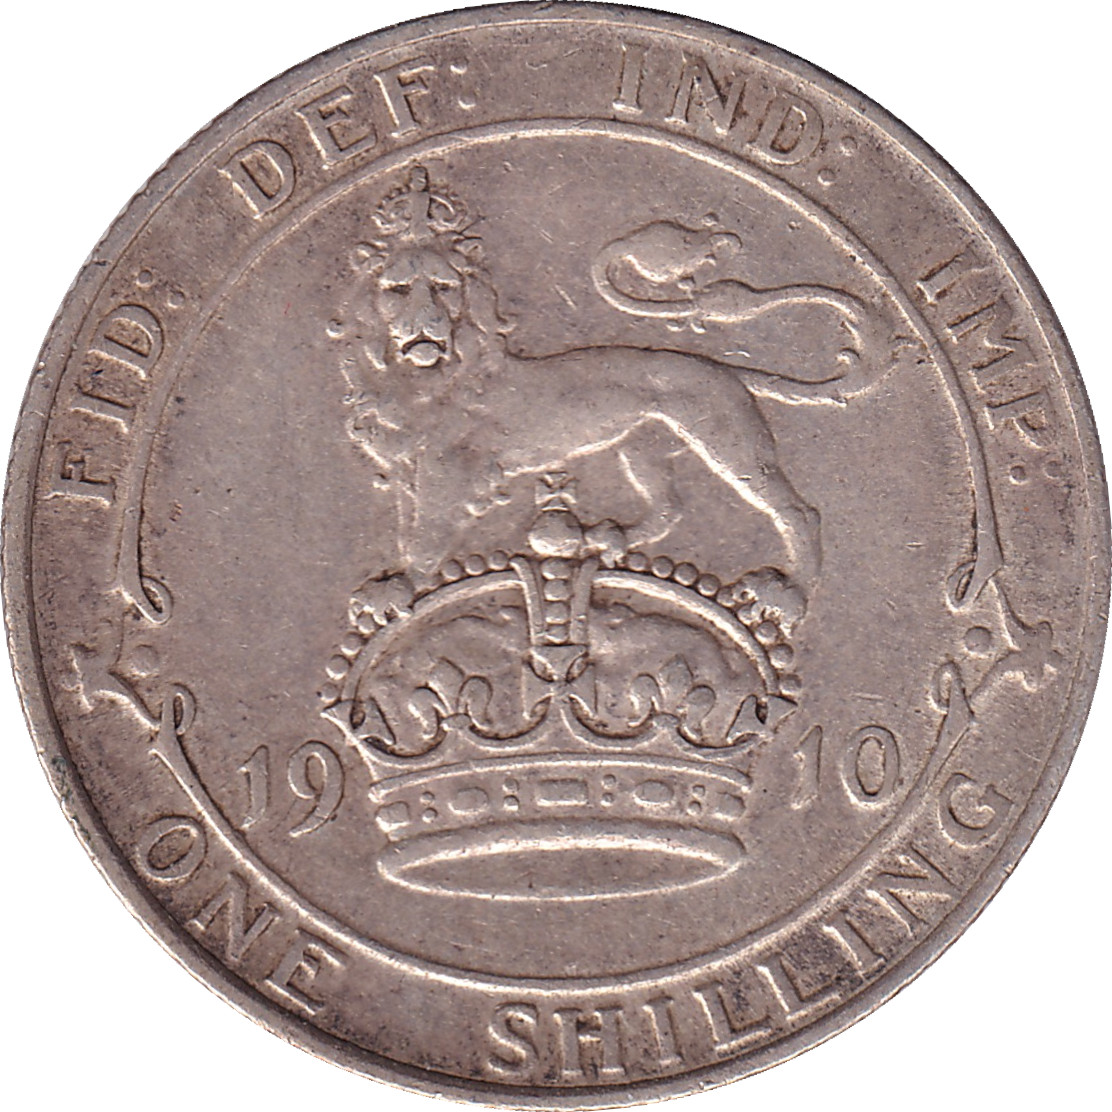 1 shilling - Edward VII